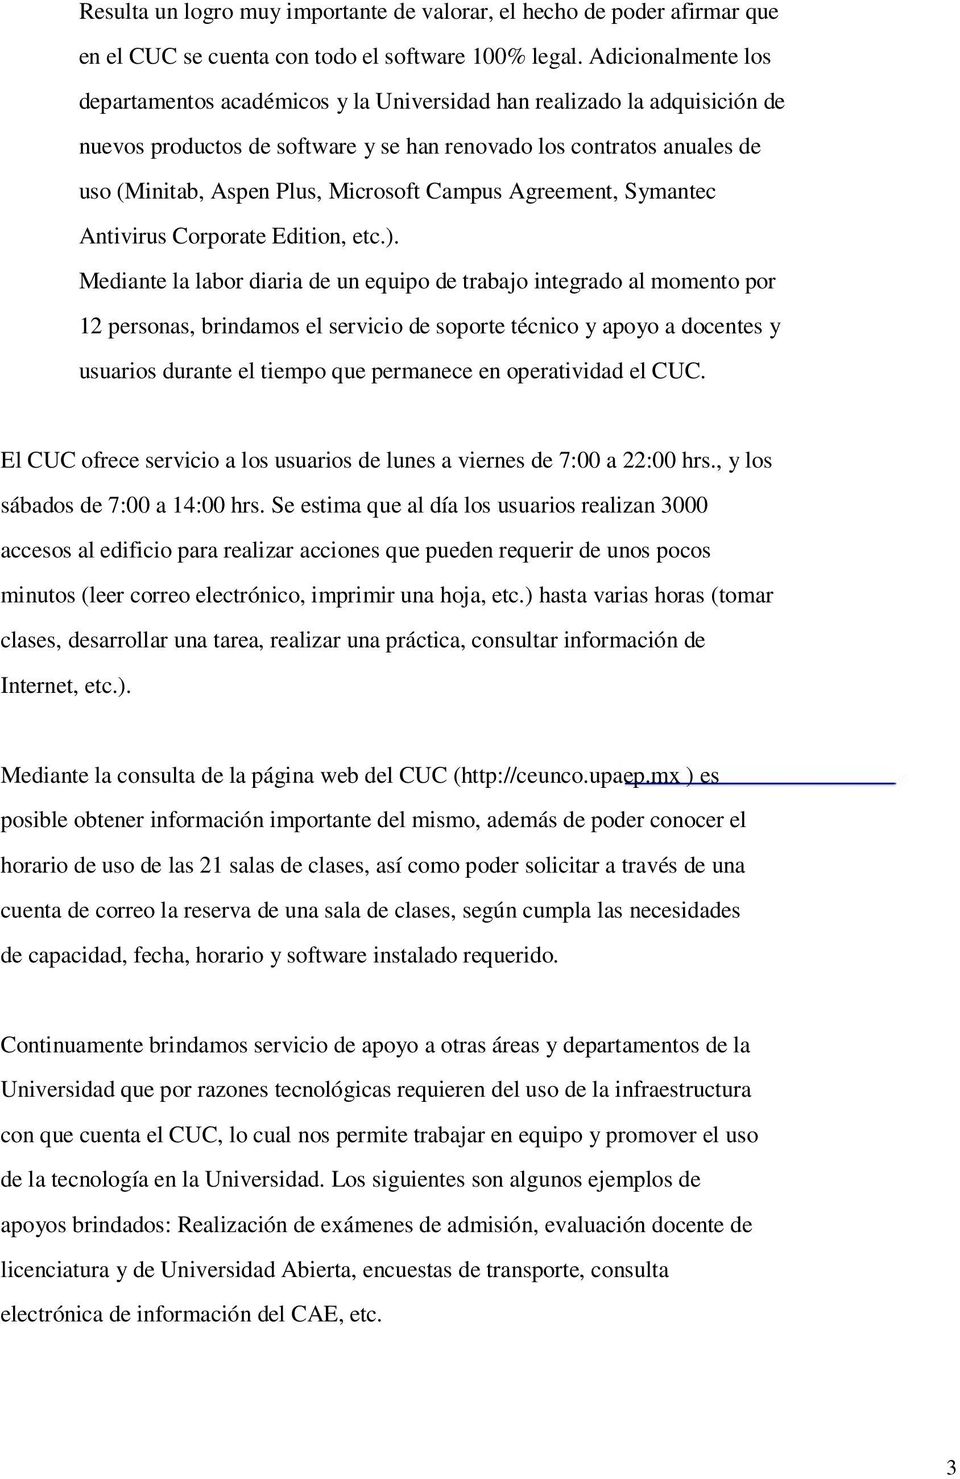 Microsoft Campus Agreement, Symantec Antivirus Corporate Edition, etc.).